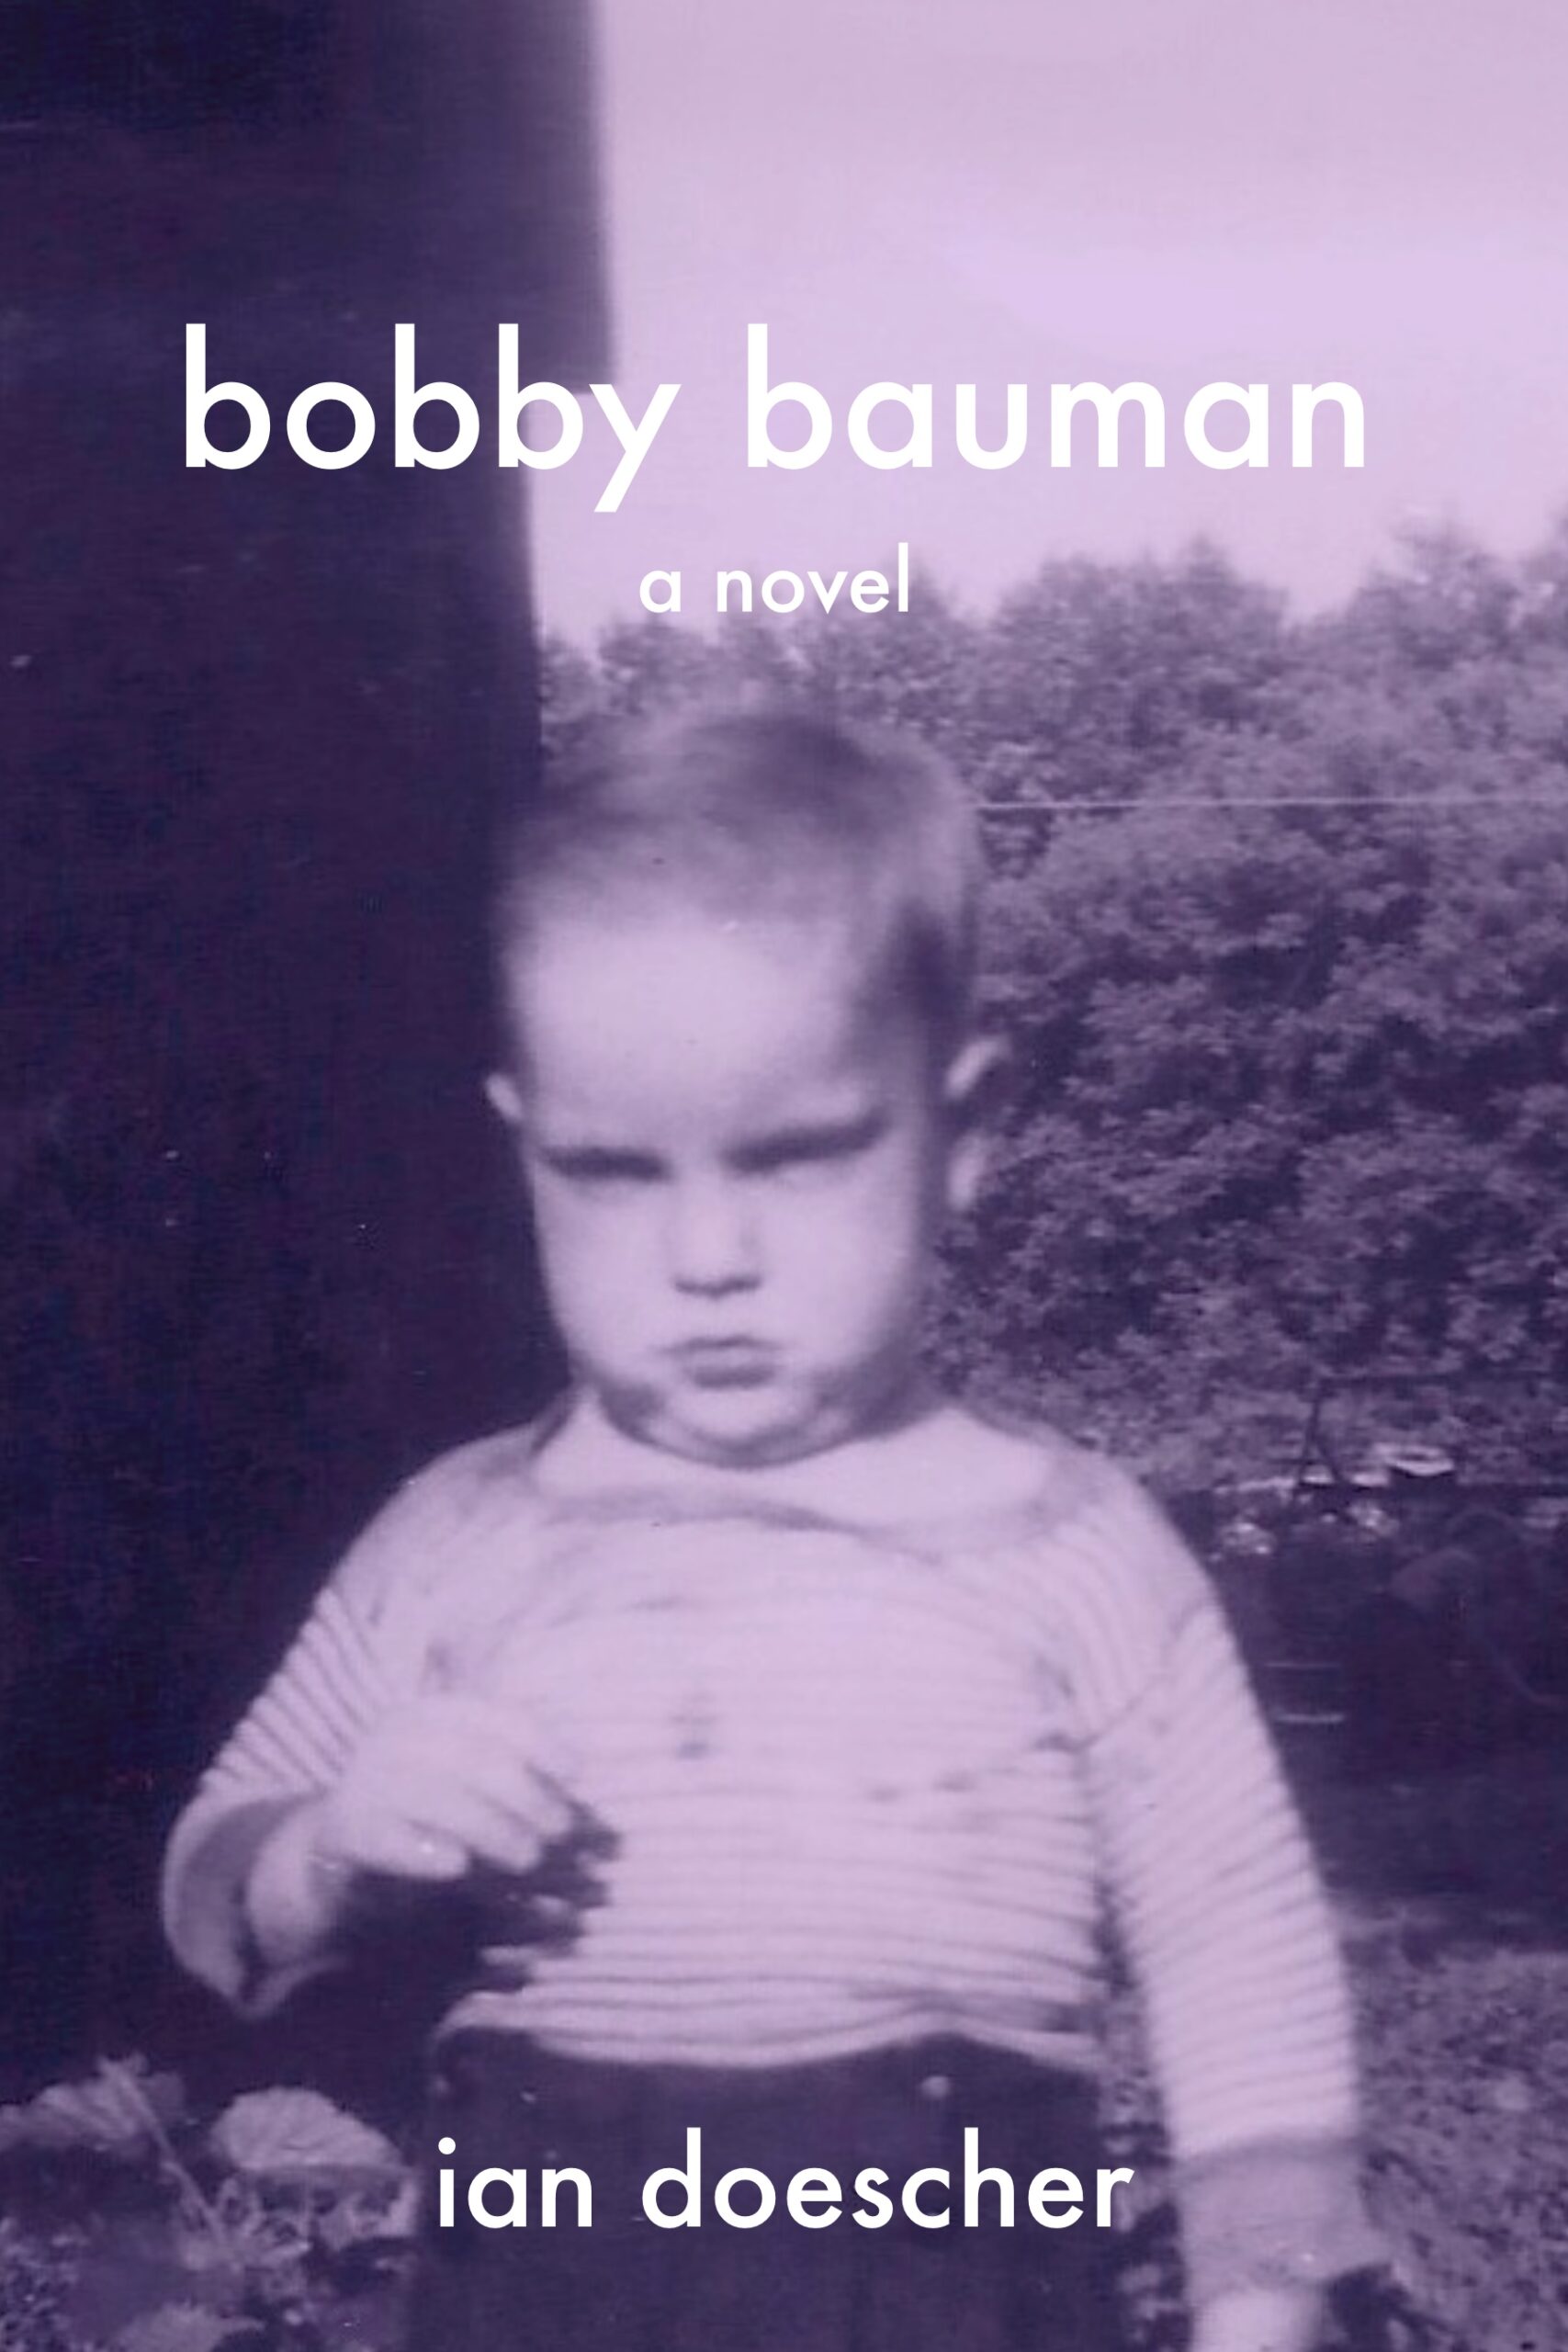 Bobby Bauman - A novel by Ian Doescher